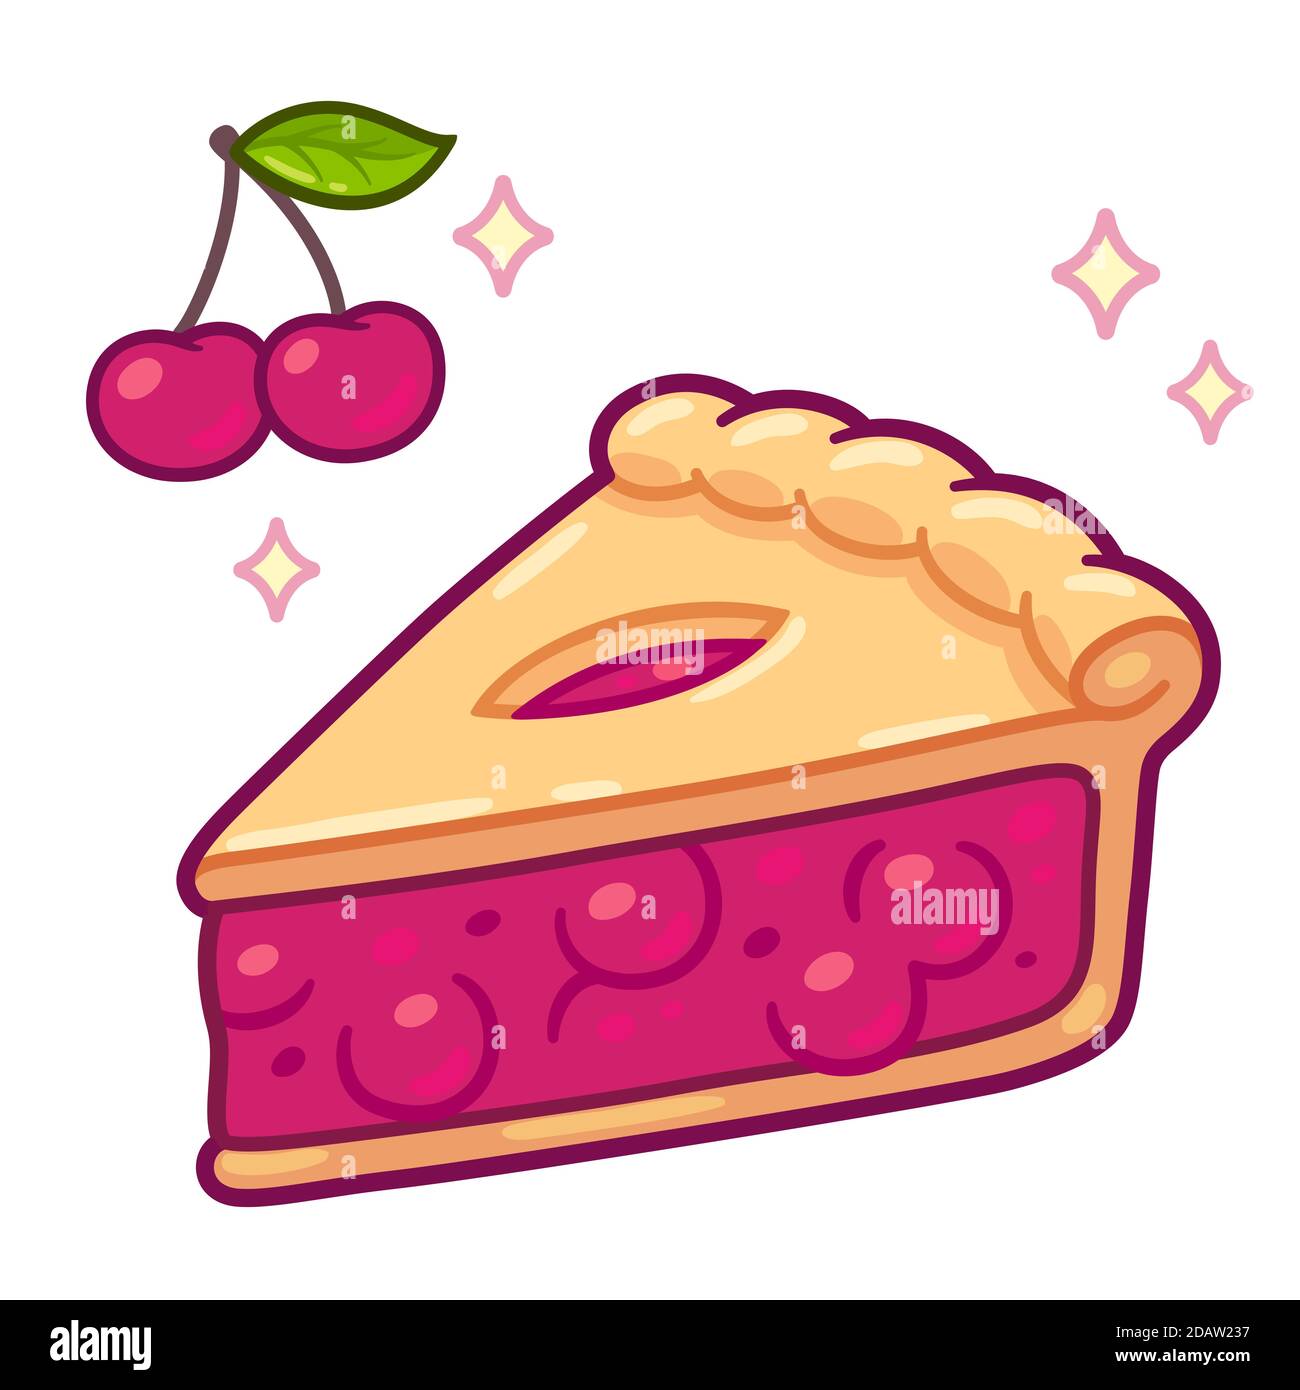 Simpatico disegno di torta di ciliegia cartoon. Semplice fetta di torta disegnata a mano con ciliegie. Illustrazione della clip art vettoriale isolata. Illustrazione Vettoriale